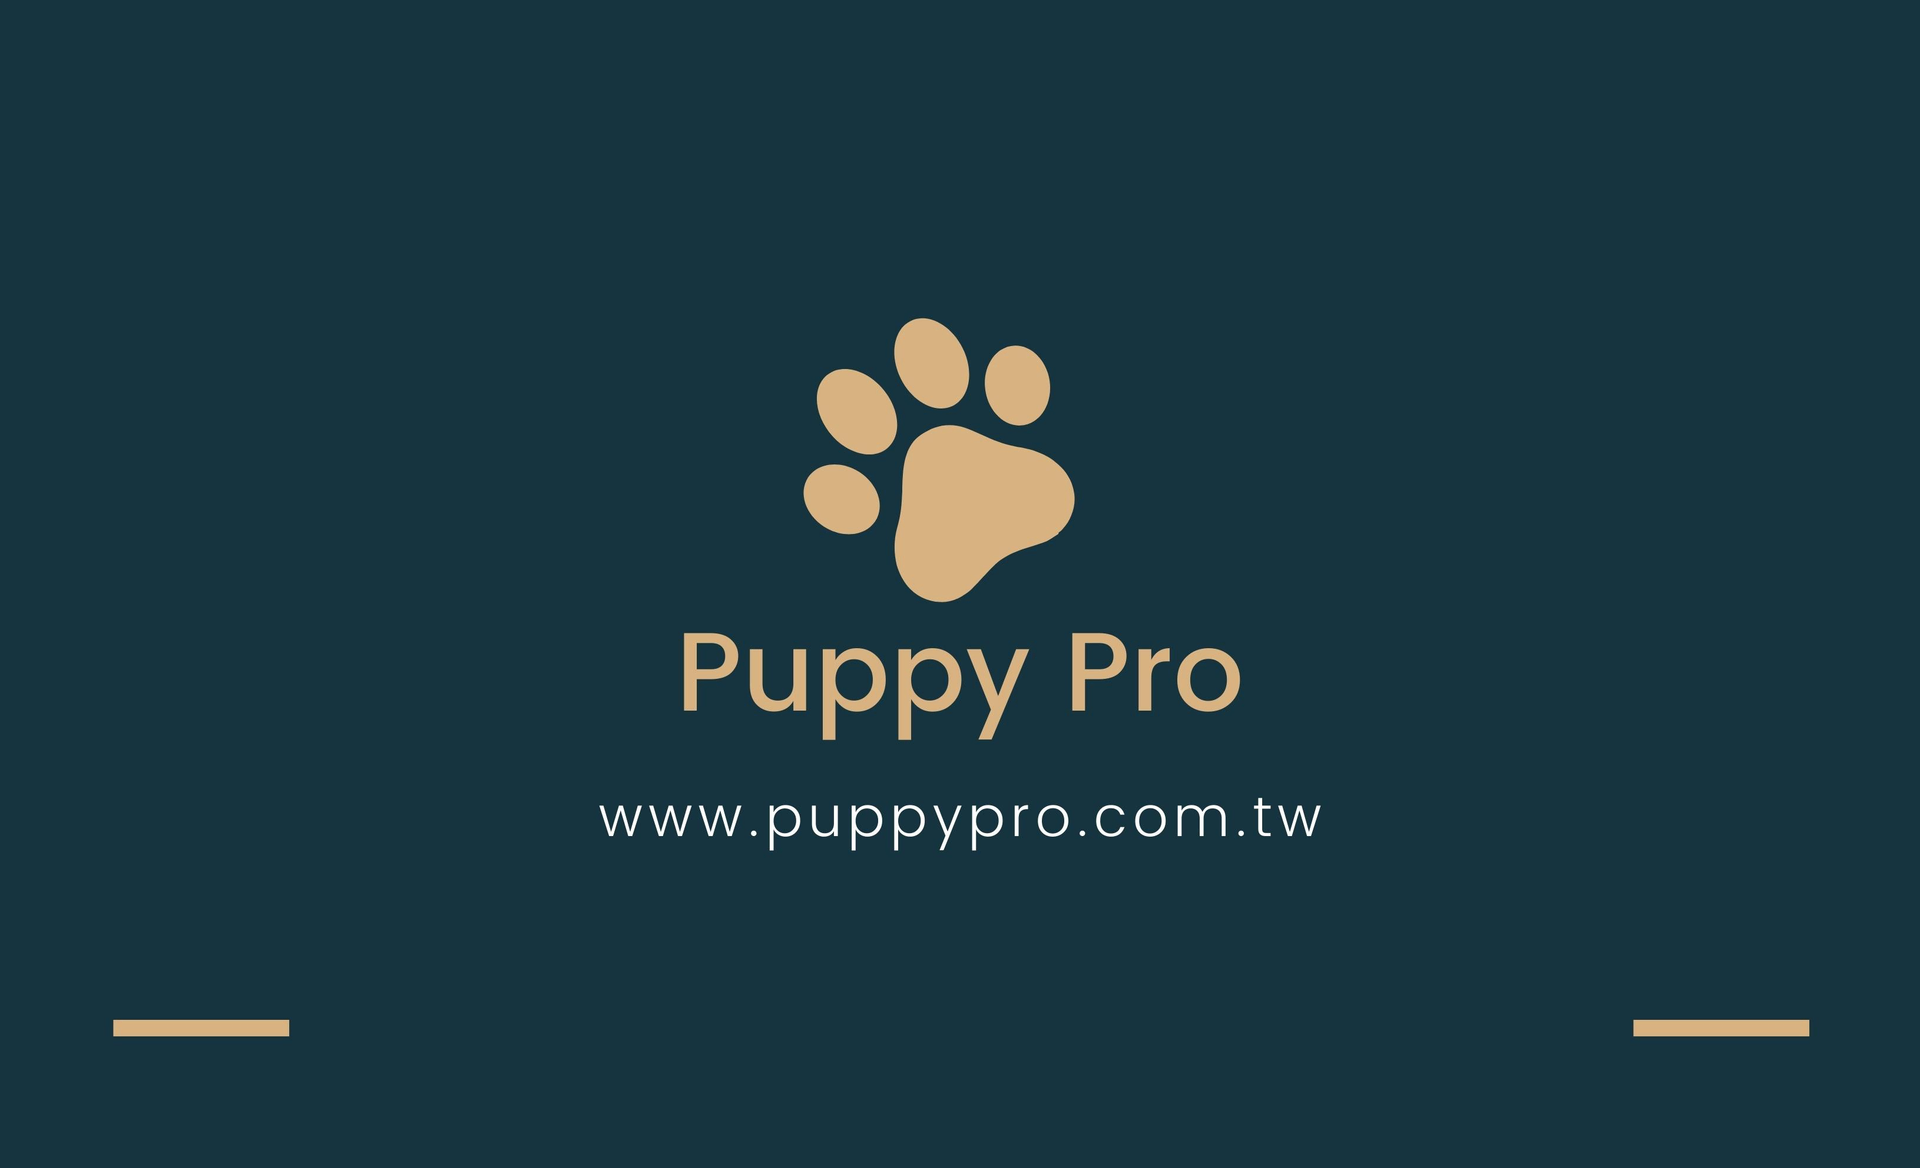 PuppyPro胖皮寶貝寵物用品批發公司與供應商